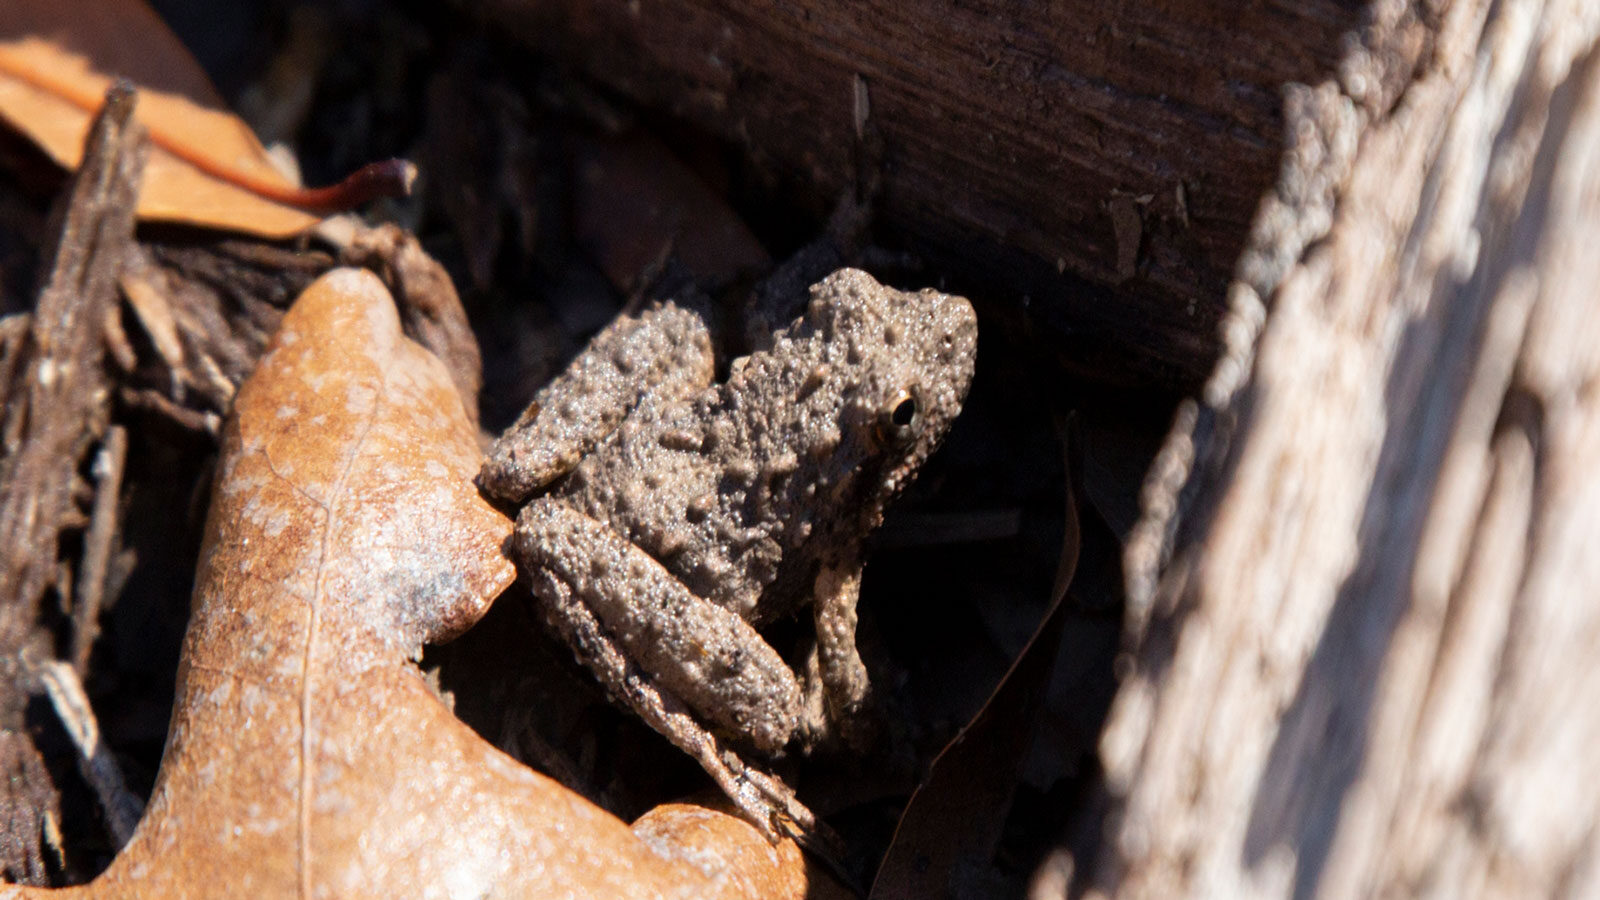 North Louisiana Amphibians: Blanchard's cricket frog on a dead, brown leaf near two fallen logs